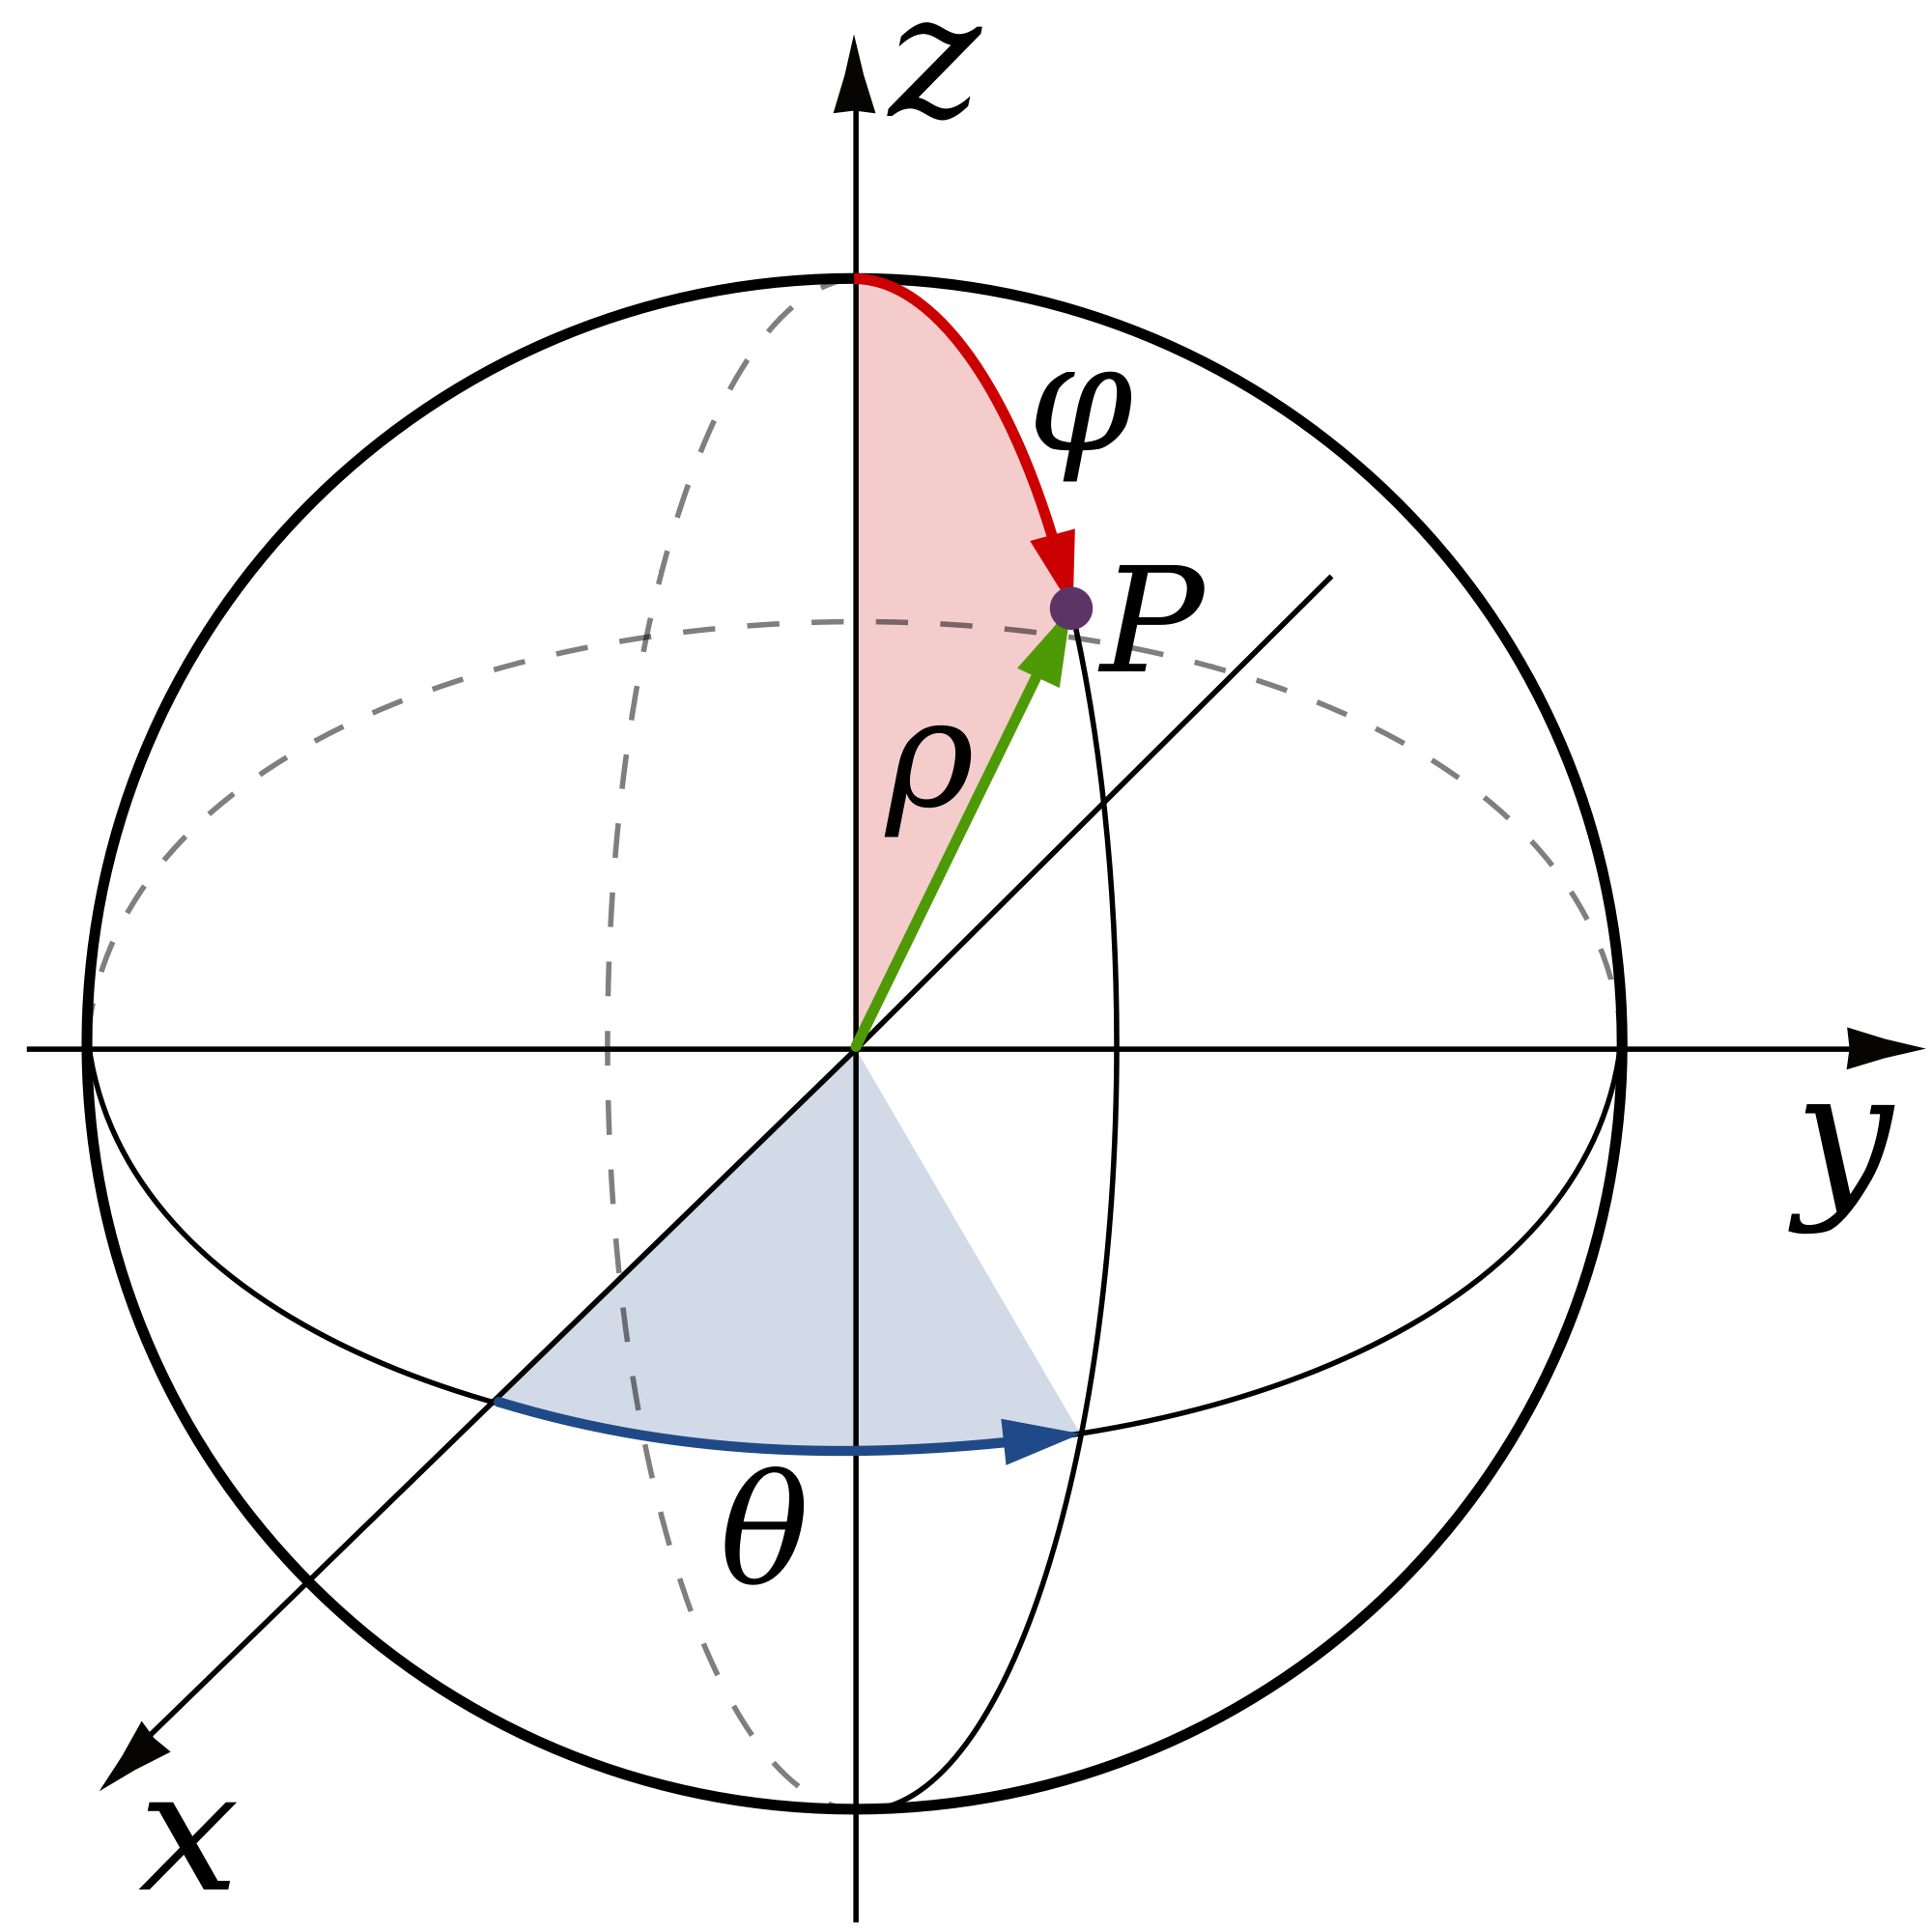 polar coordinates diagram